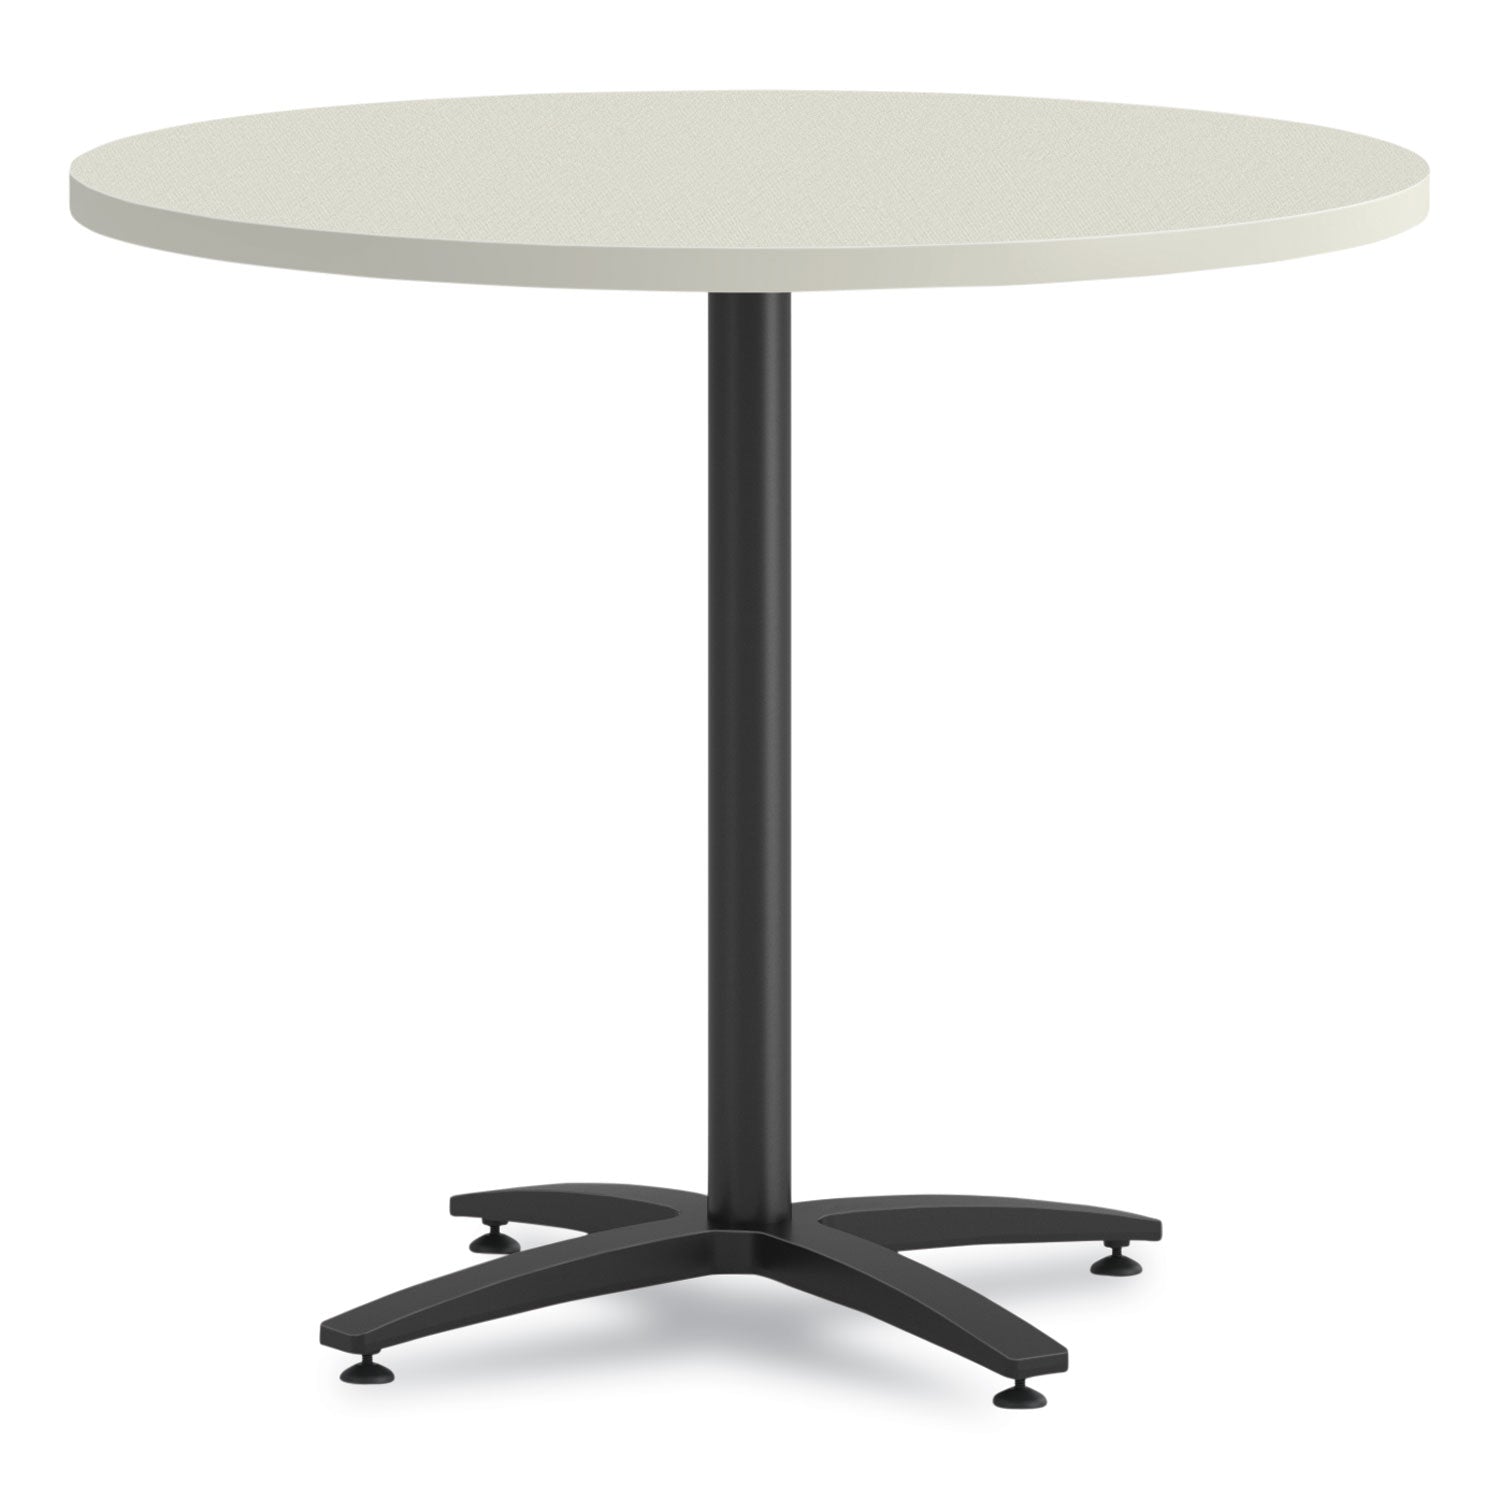 between-round-table-top-42-diameter-silver-mesh_honbtrnd42nb9l - 1